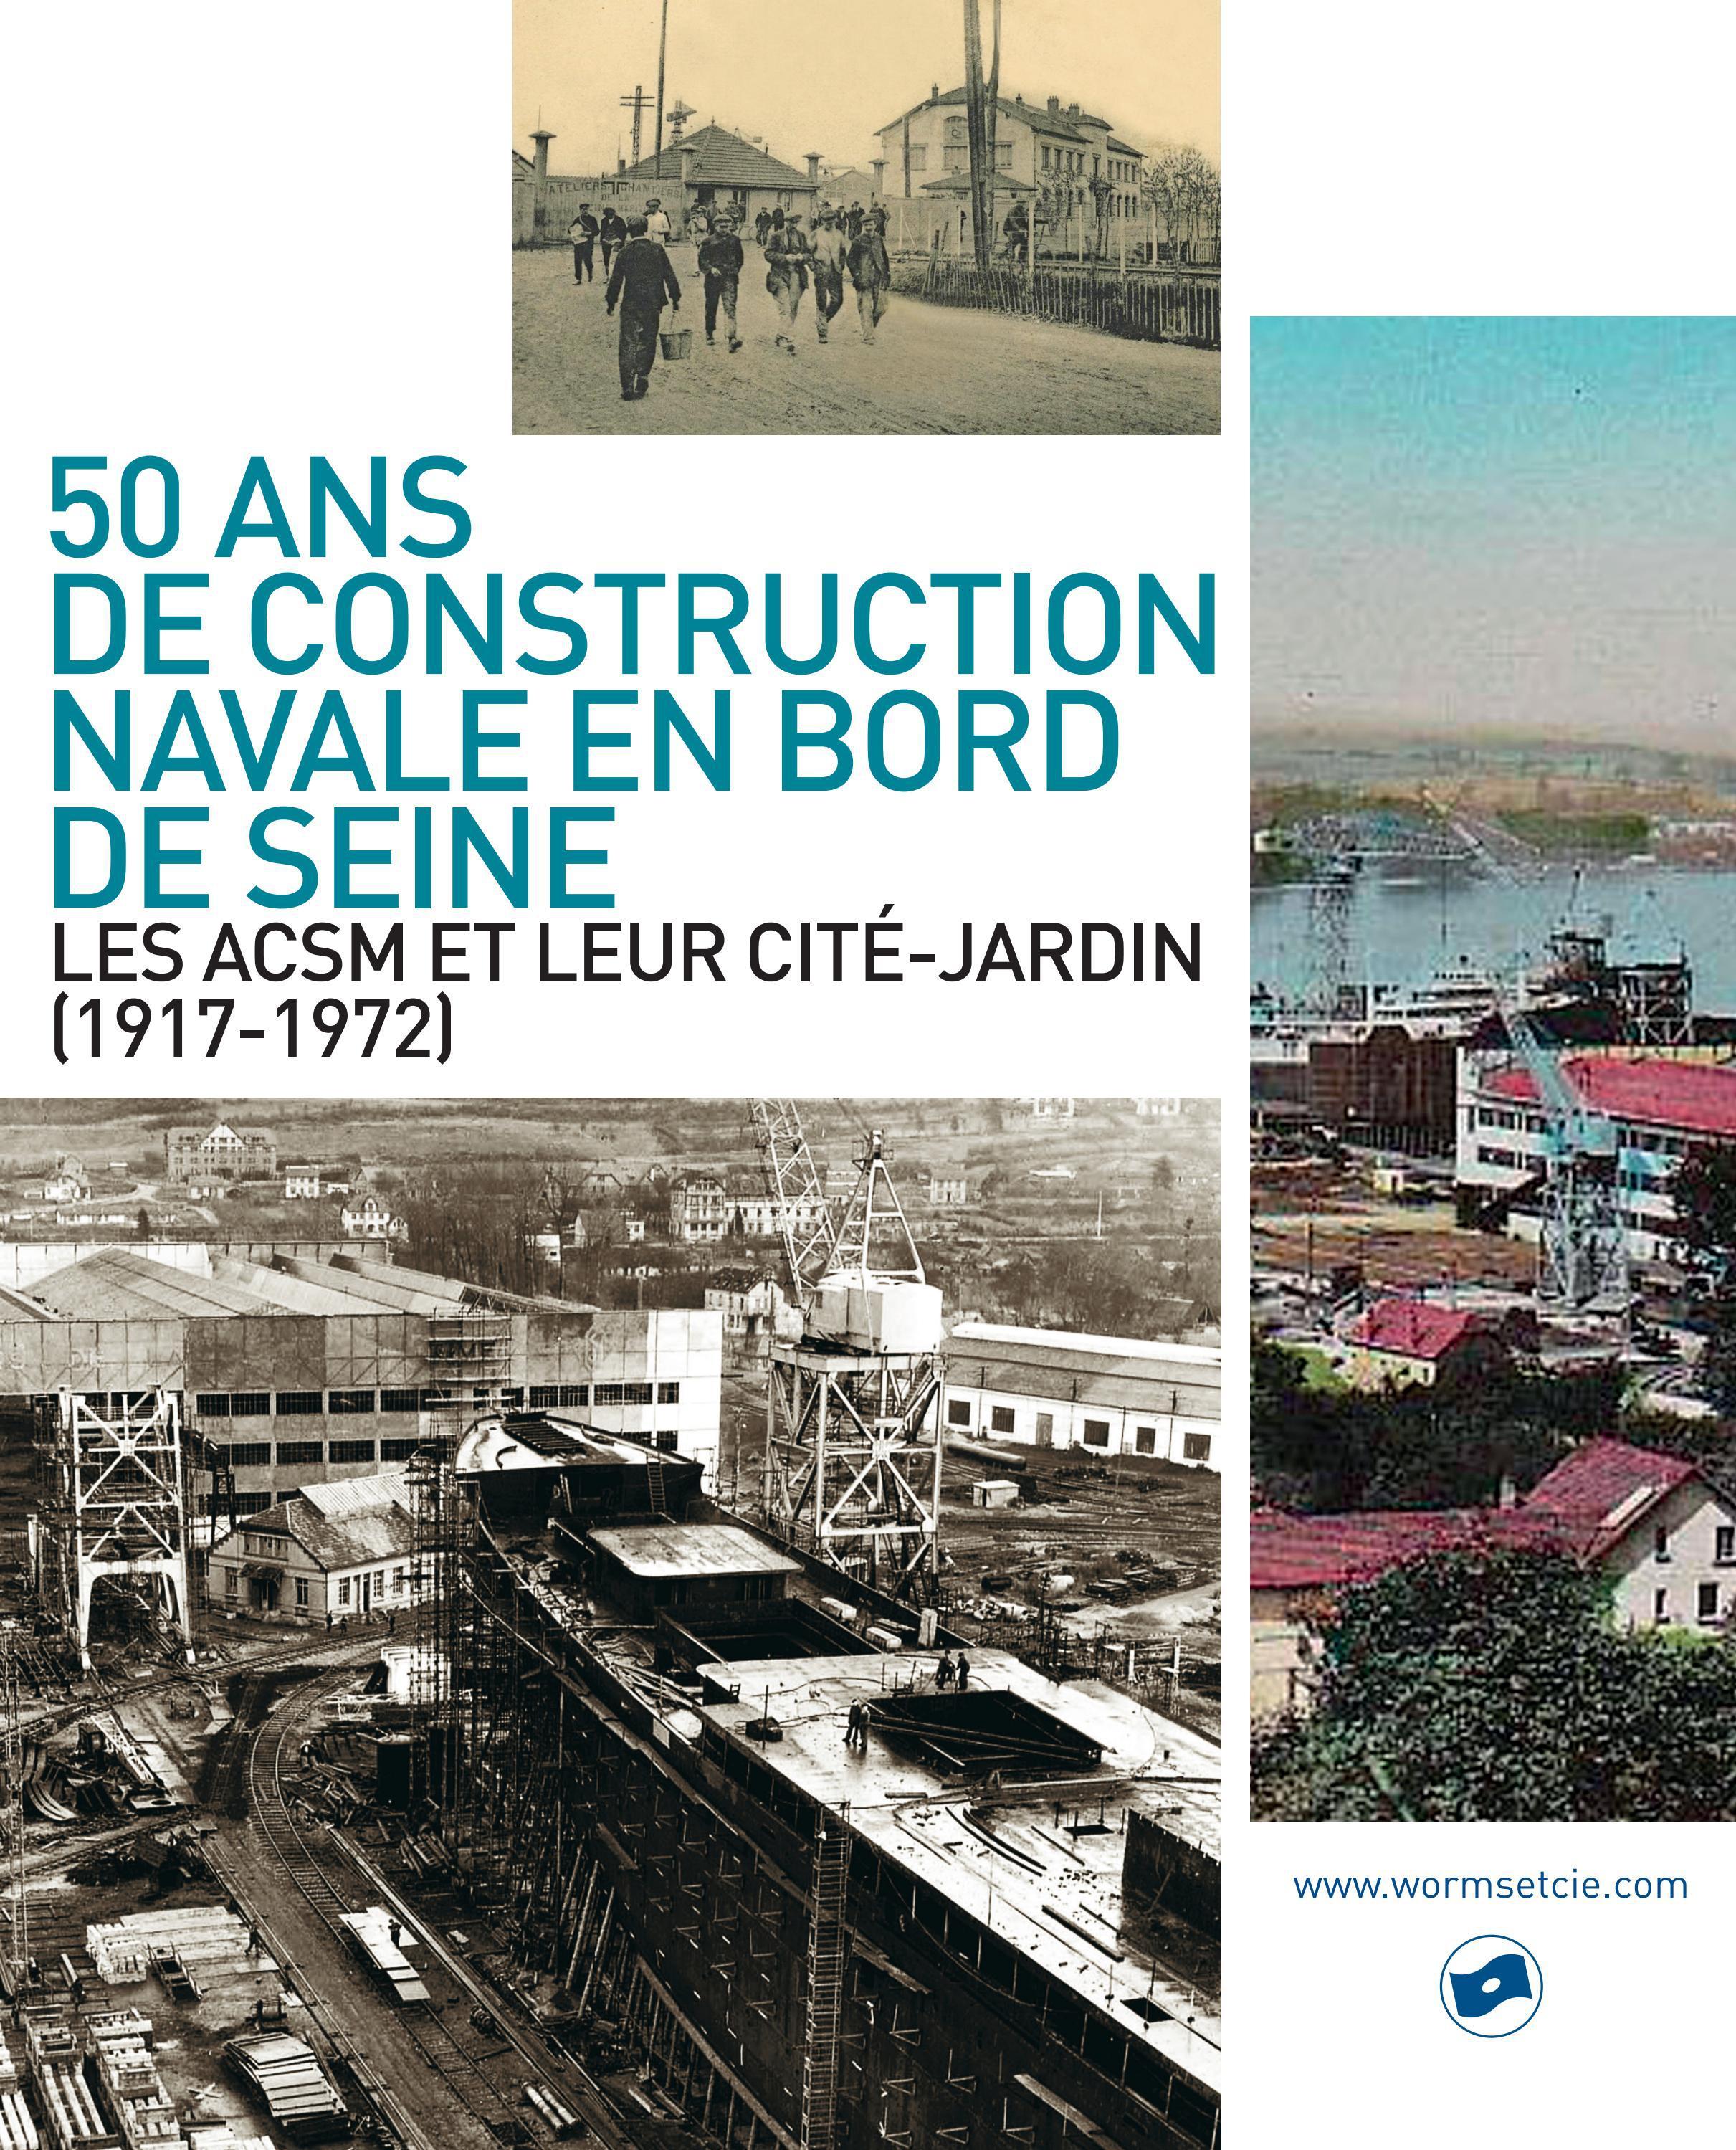 50 ans de construction navale en bord de Seine by Worms & Cie - Issuu